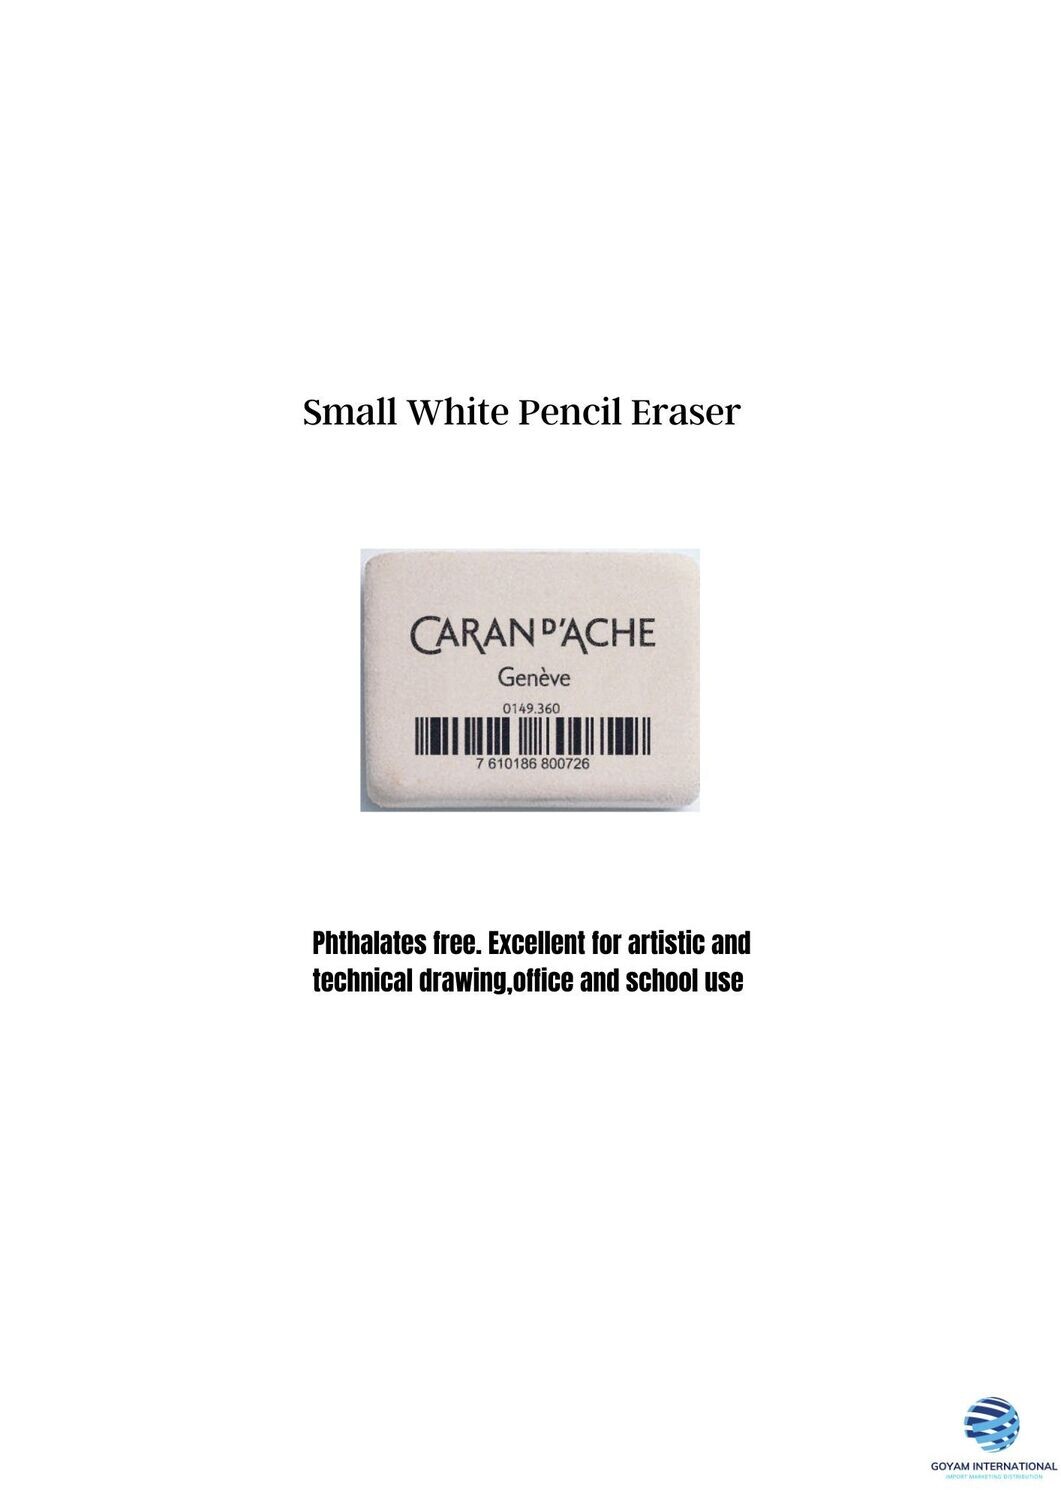 Small White Pencil Eraser